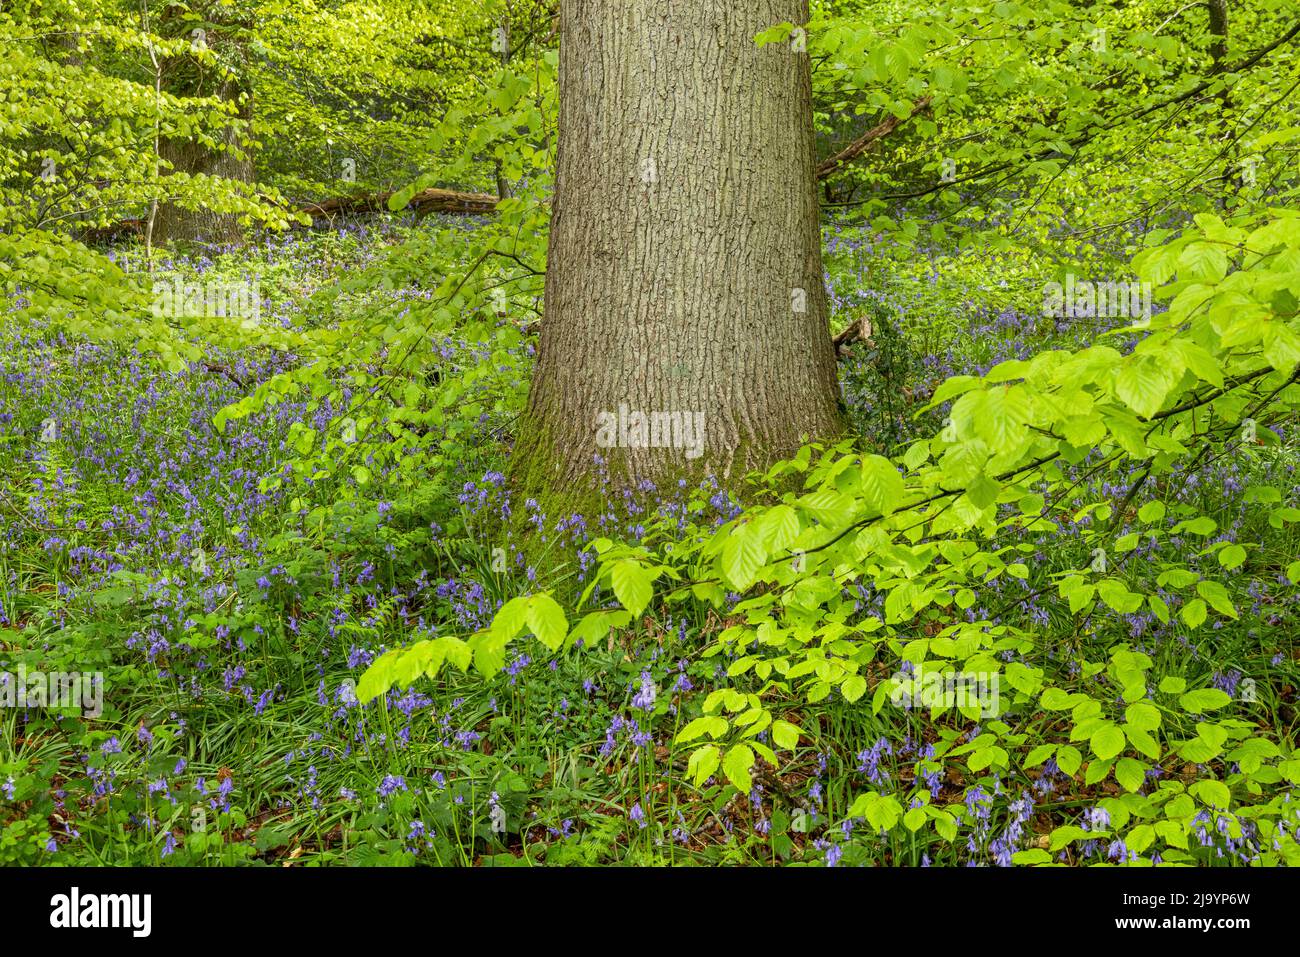 Cloches entourées de feuillage de printemps frais, Stourhead, Wiltshire, Angleterre, Royaume-Uni Banque D'Images